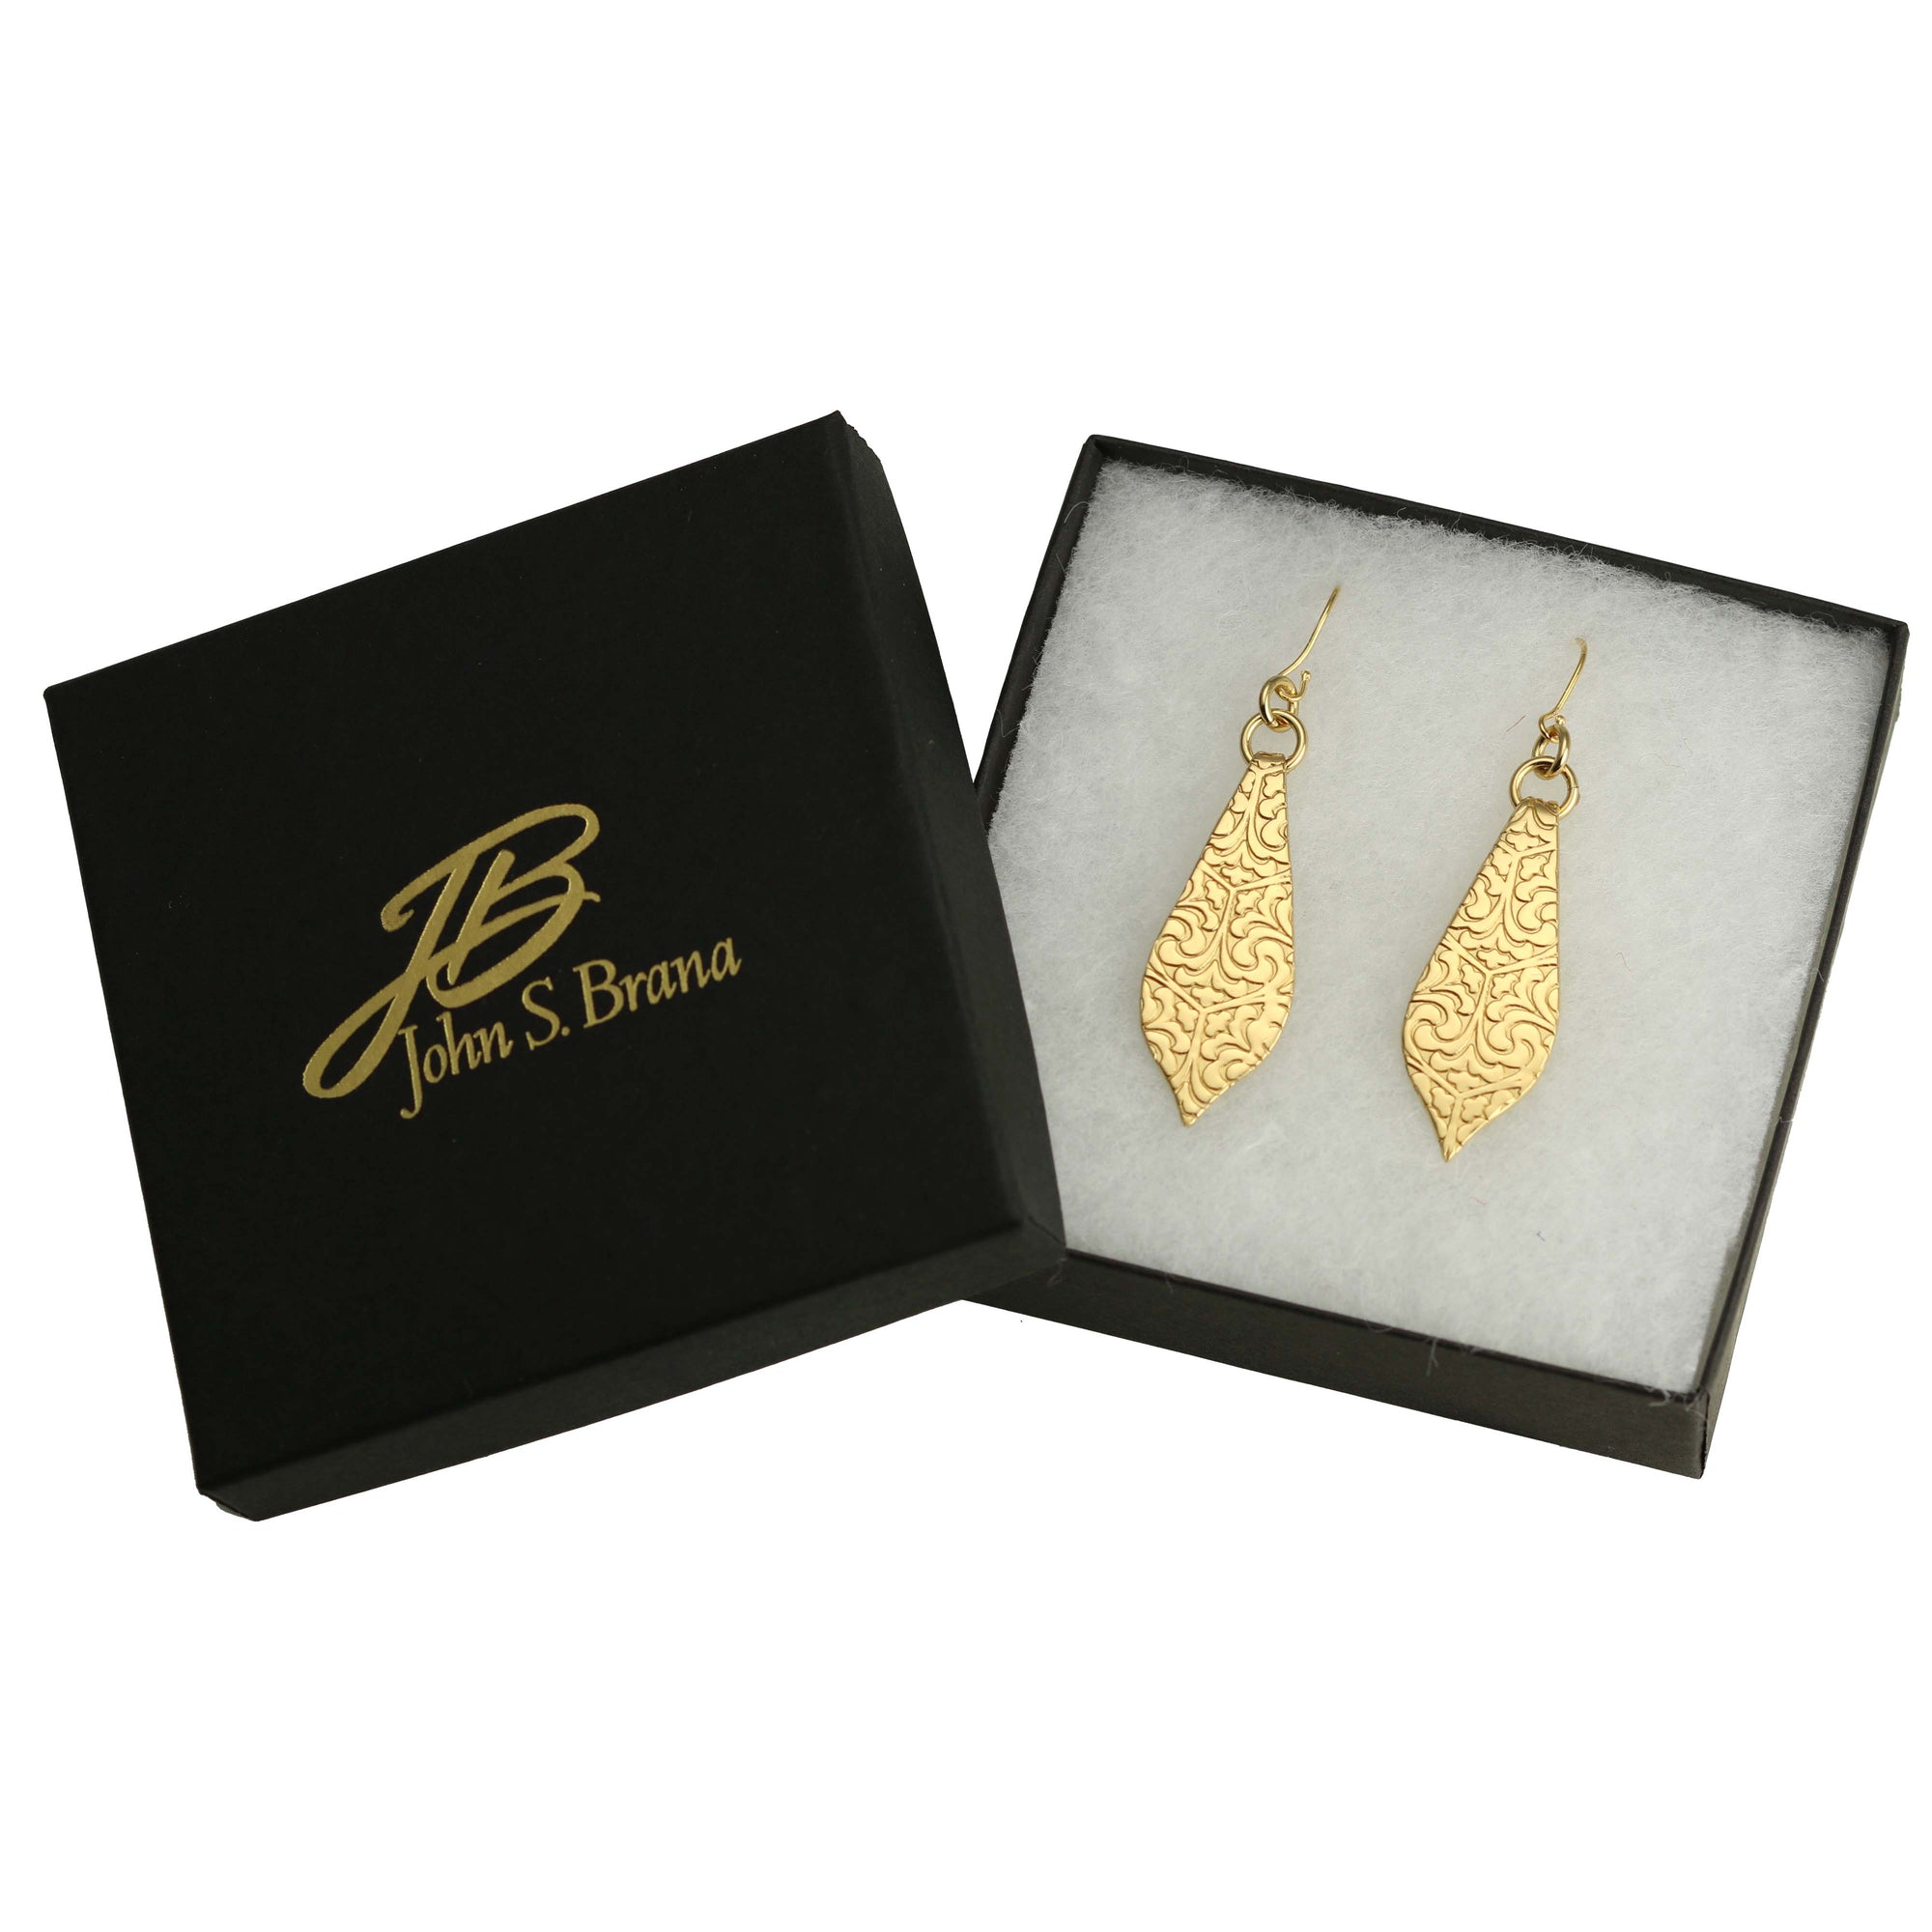 Damask Embossed Brass Nu Gold Marrakesh Teardrop Earrings in a Black Gift Box